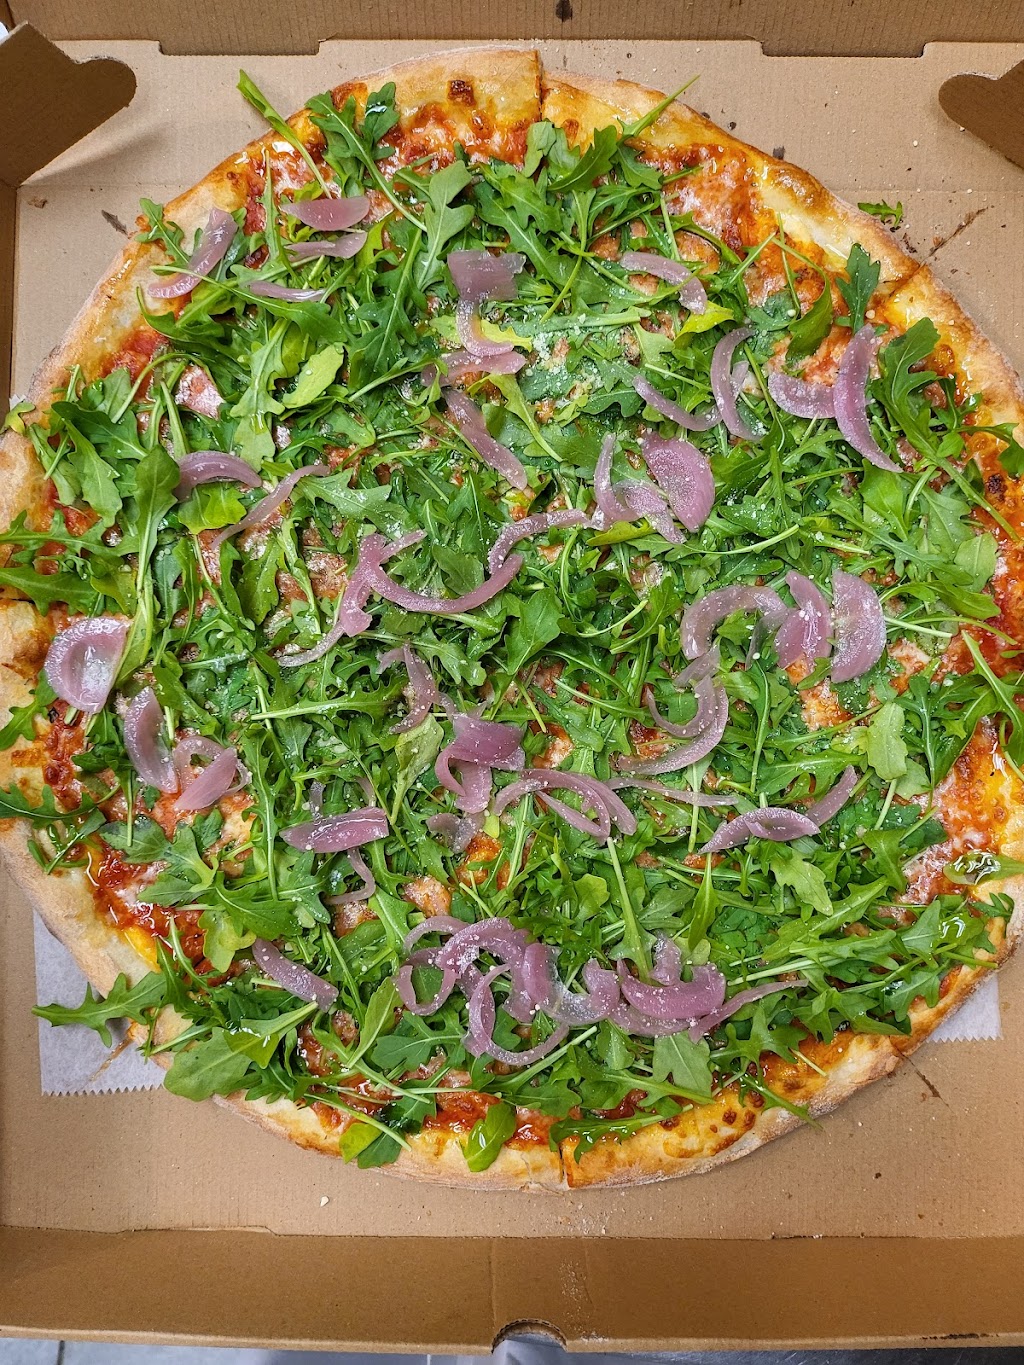 Italian Touch Pizza & Pasta | 1547 Arthur Kill Rd, Staten Island, NY 10312 | Phone: (718) 619-8669